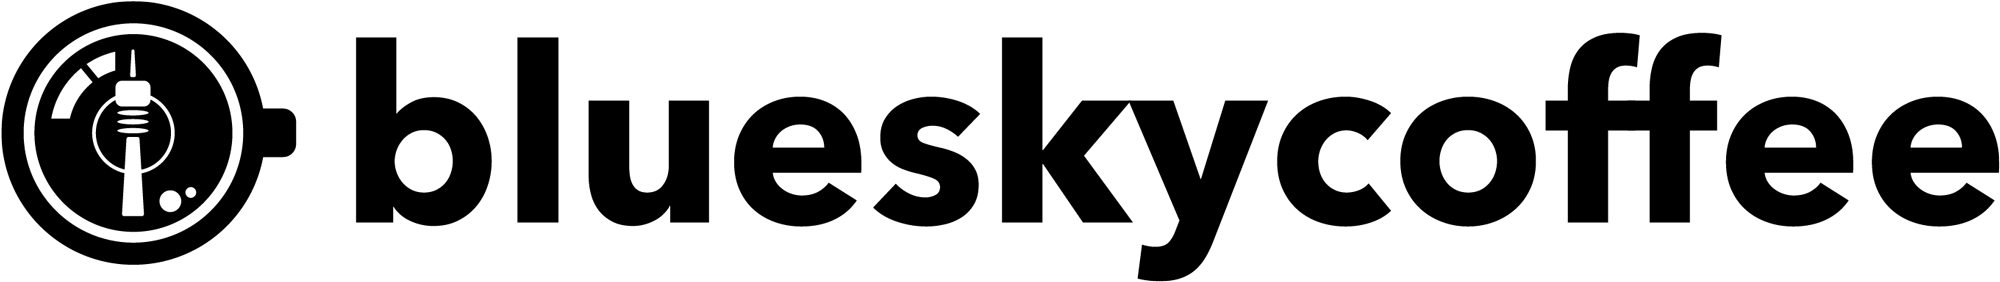 Logo blueskycoffee schwarz